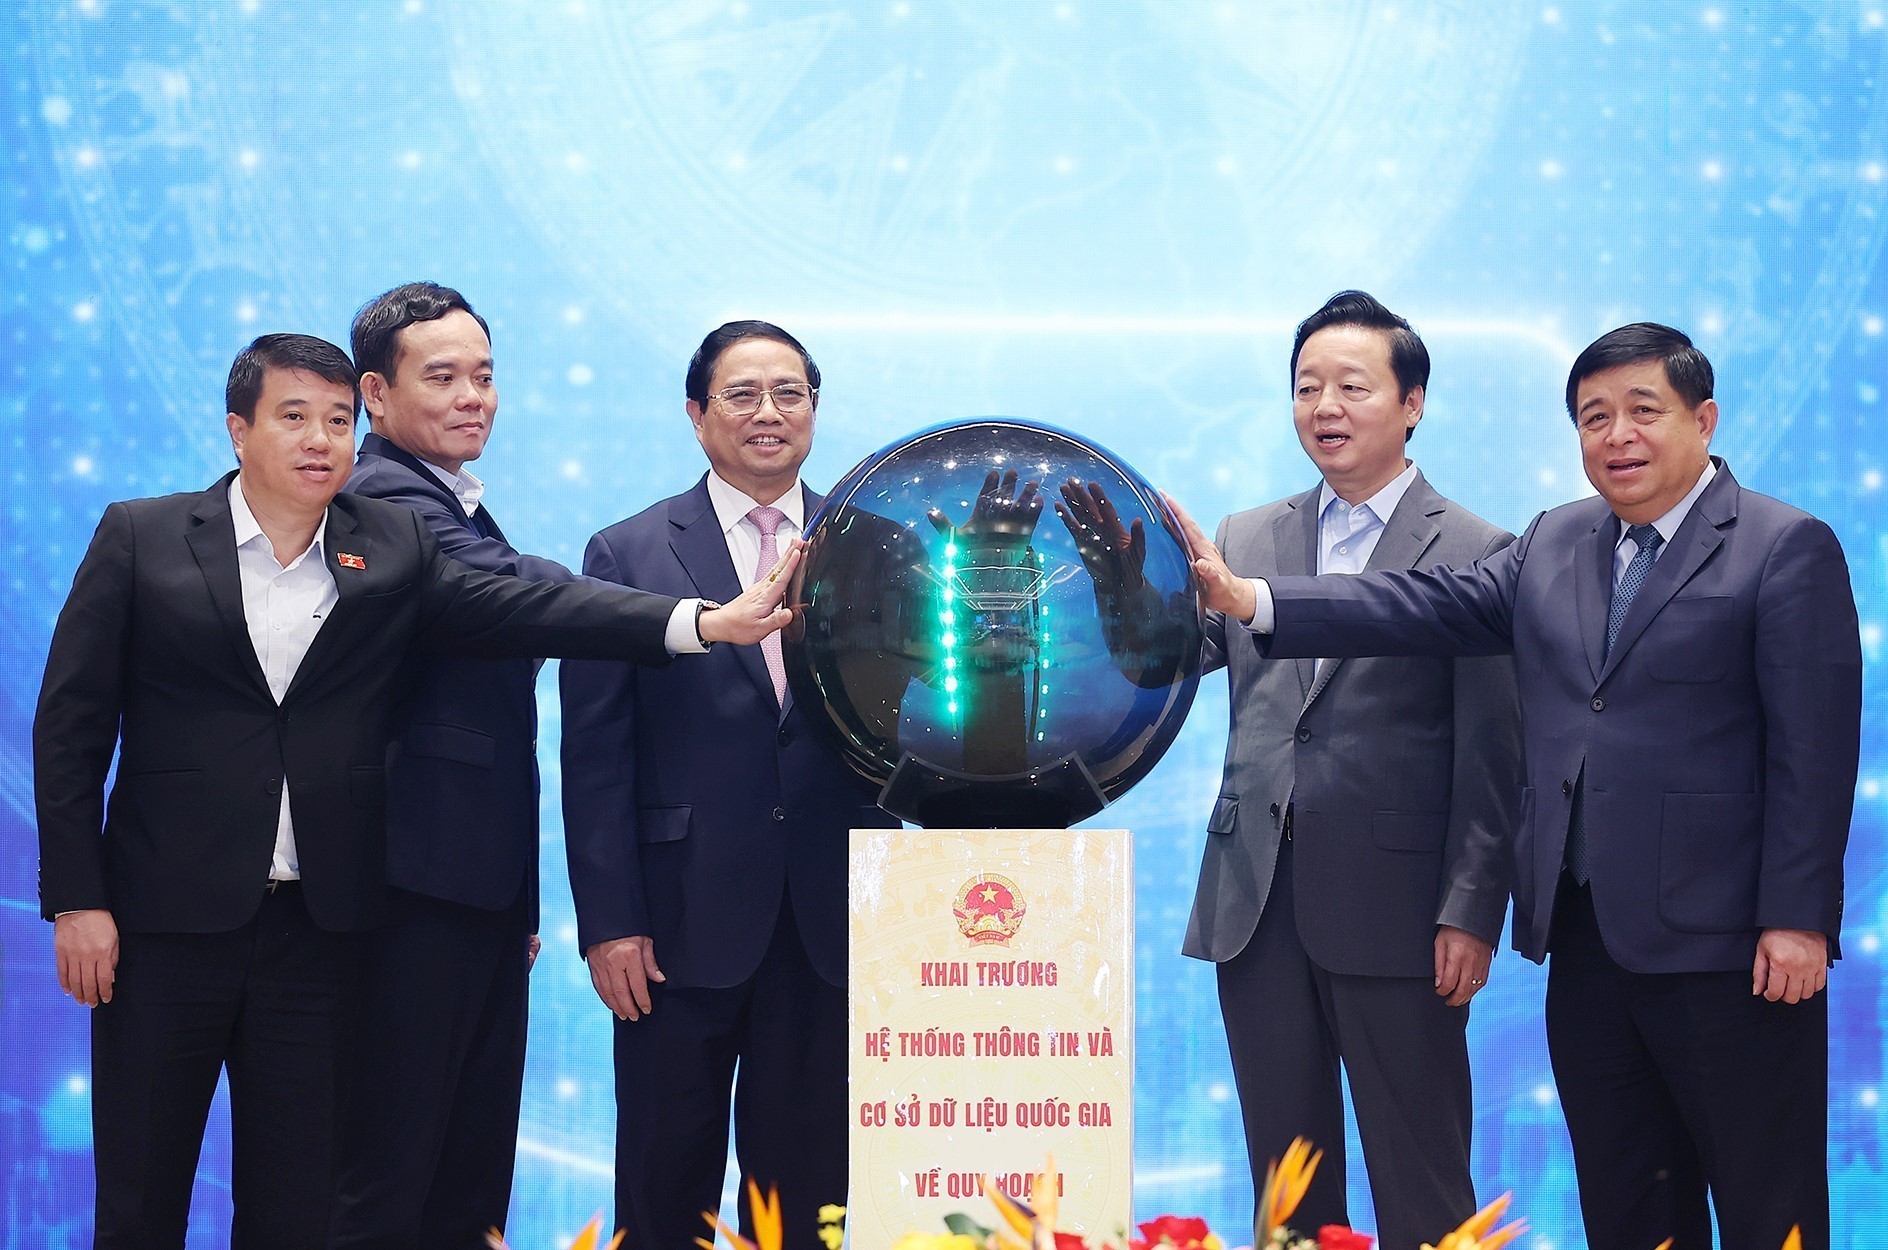 Thủ tướng Phạm Minh Chính và các đại biểu thực hiện nghi thức khai trương hệ thống thông tin và cơ sở dữ liệu quy hoạch quốc gia. Ảnh: DƯƠNG GIANG